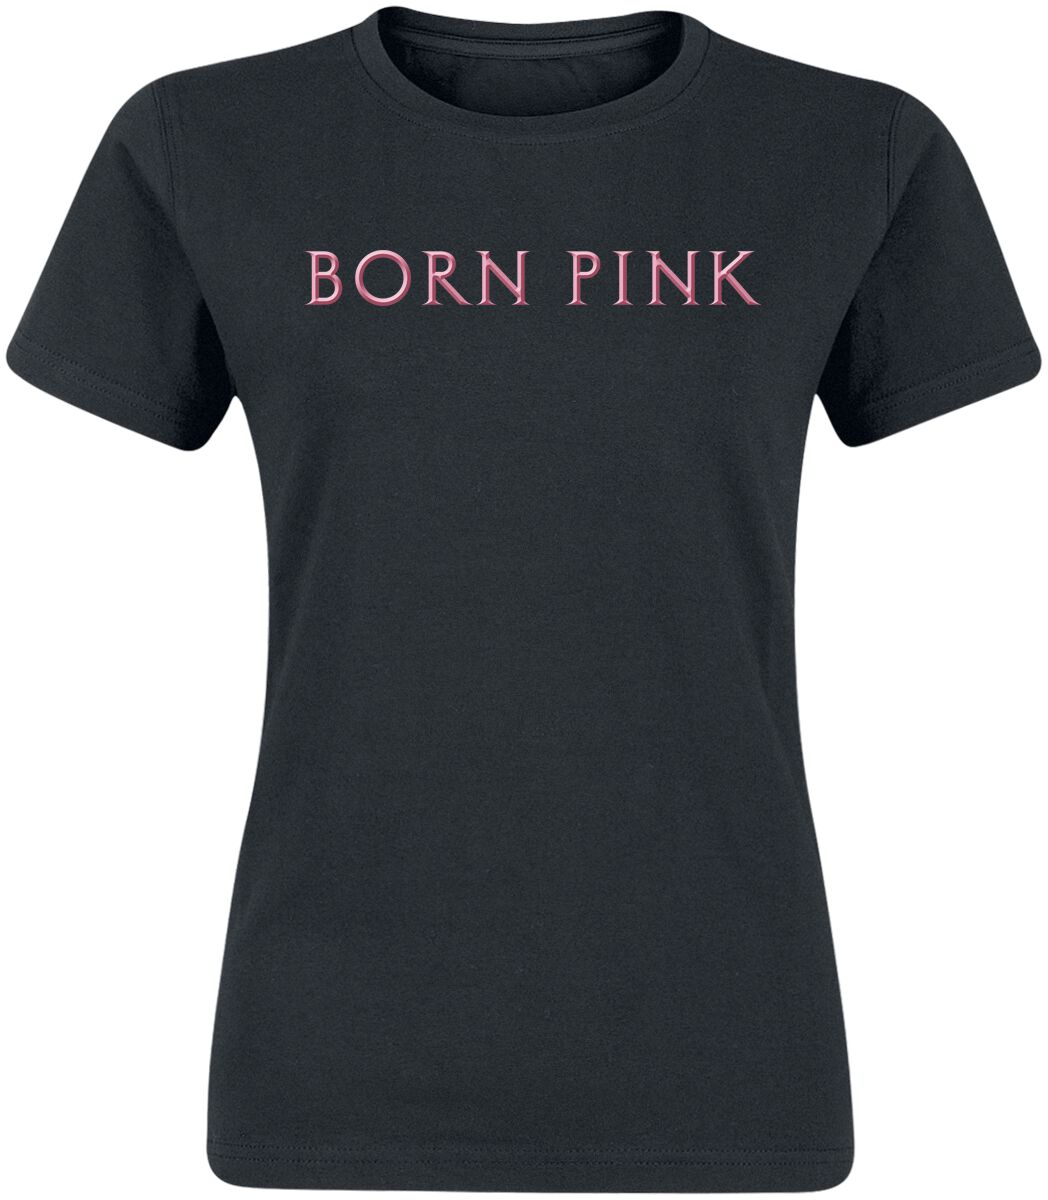 Blackpink T-Shirt - Born Pink - L bis XL - für Damen - Größe XL - schwarz  - Lizenziertes Merchandise!